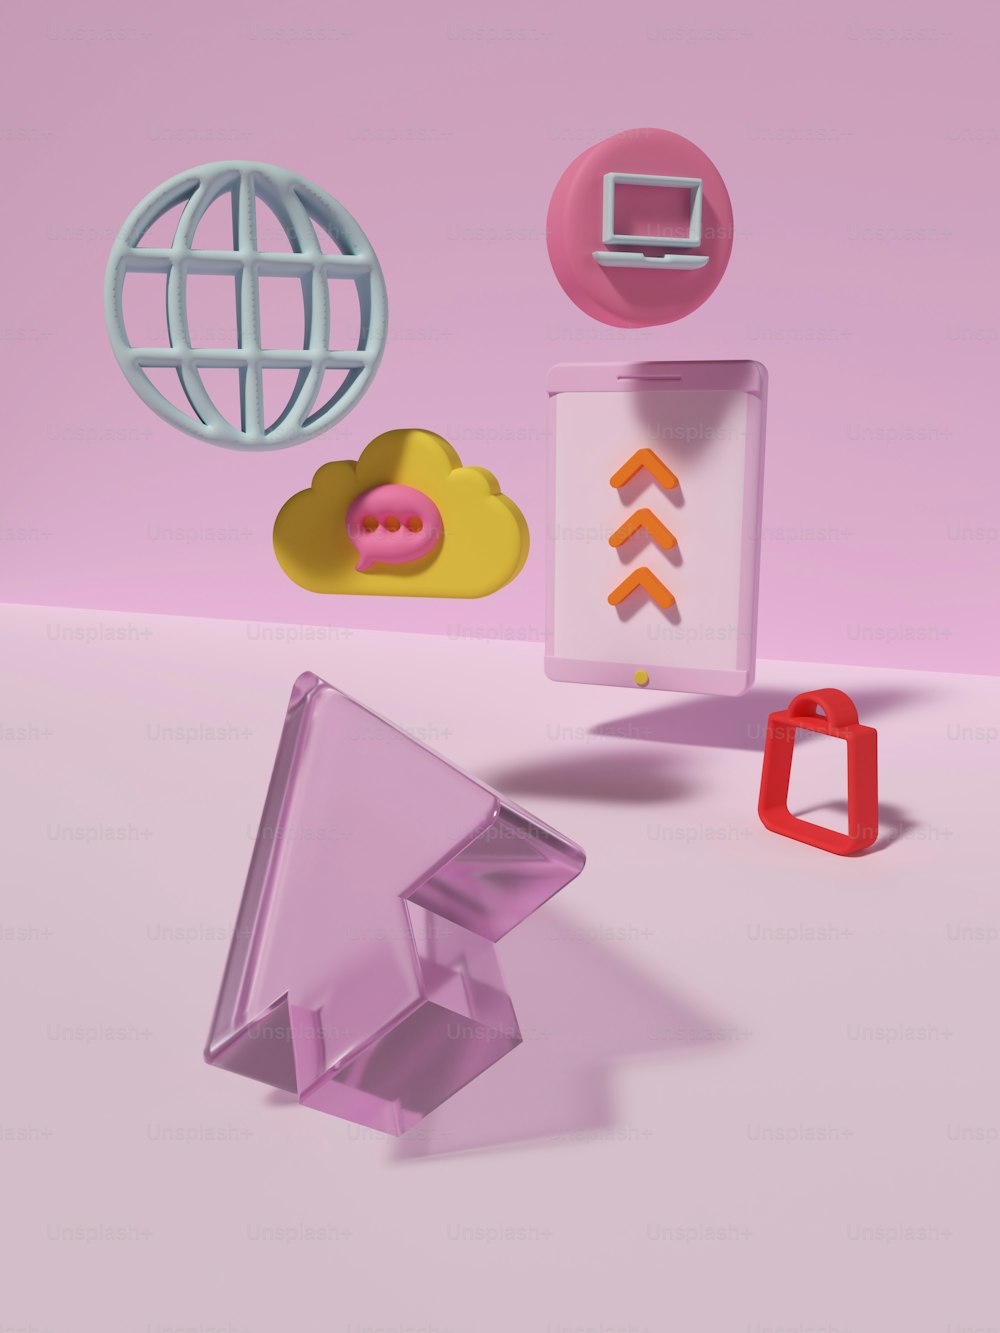 un groupe d’objets qui se trouvent sur une surface rose